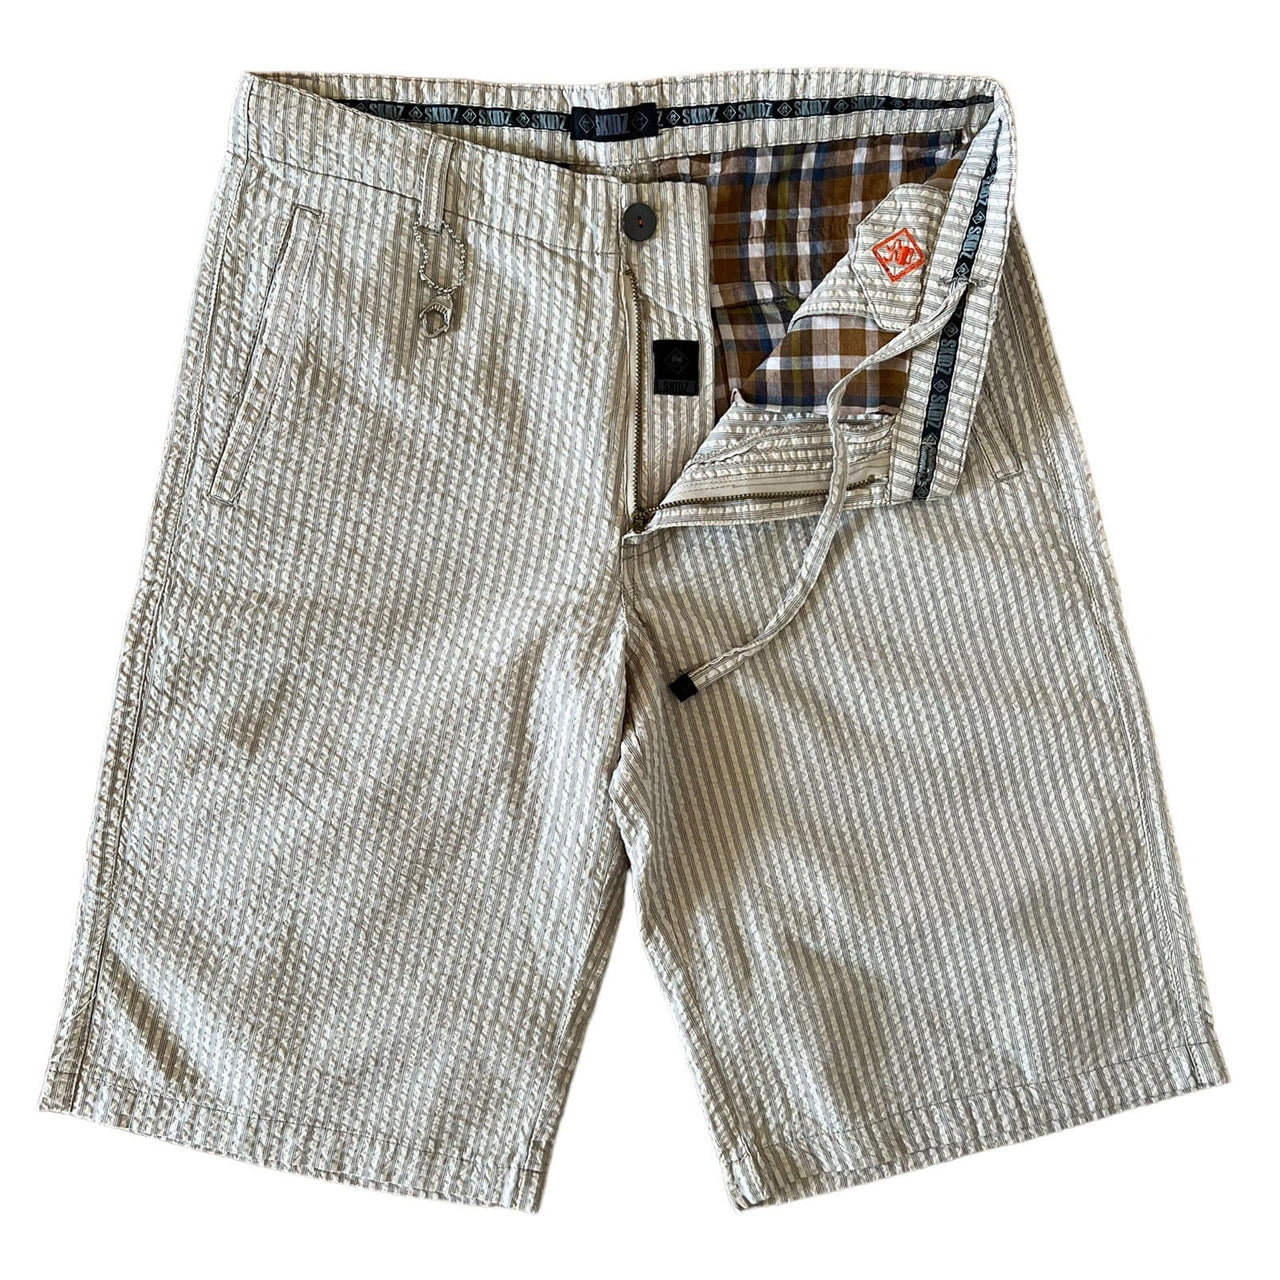 SKIDZ Shorts Seersucker Shorts Vol2 - Natural Striped